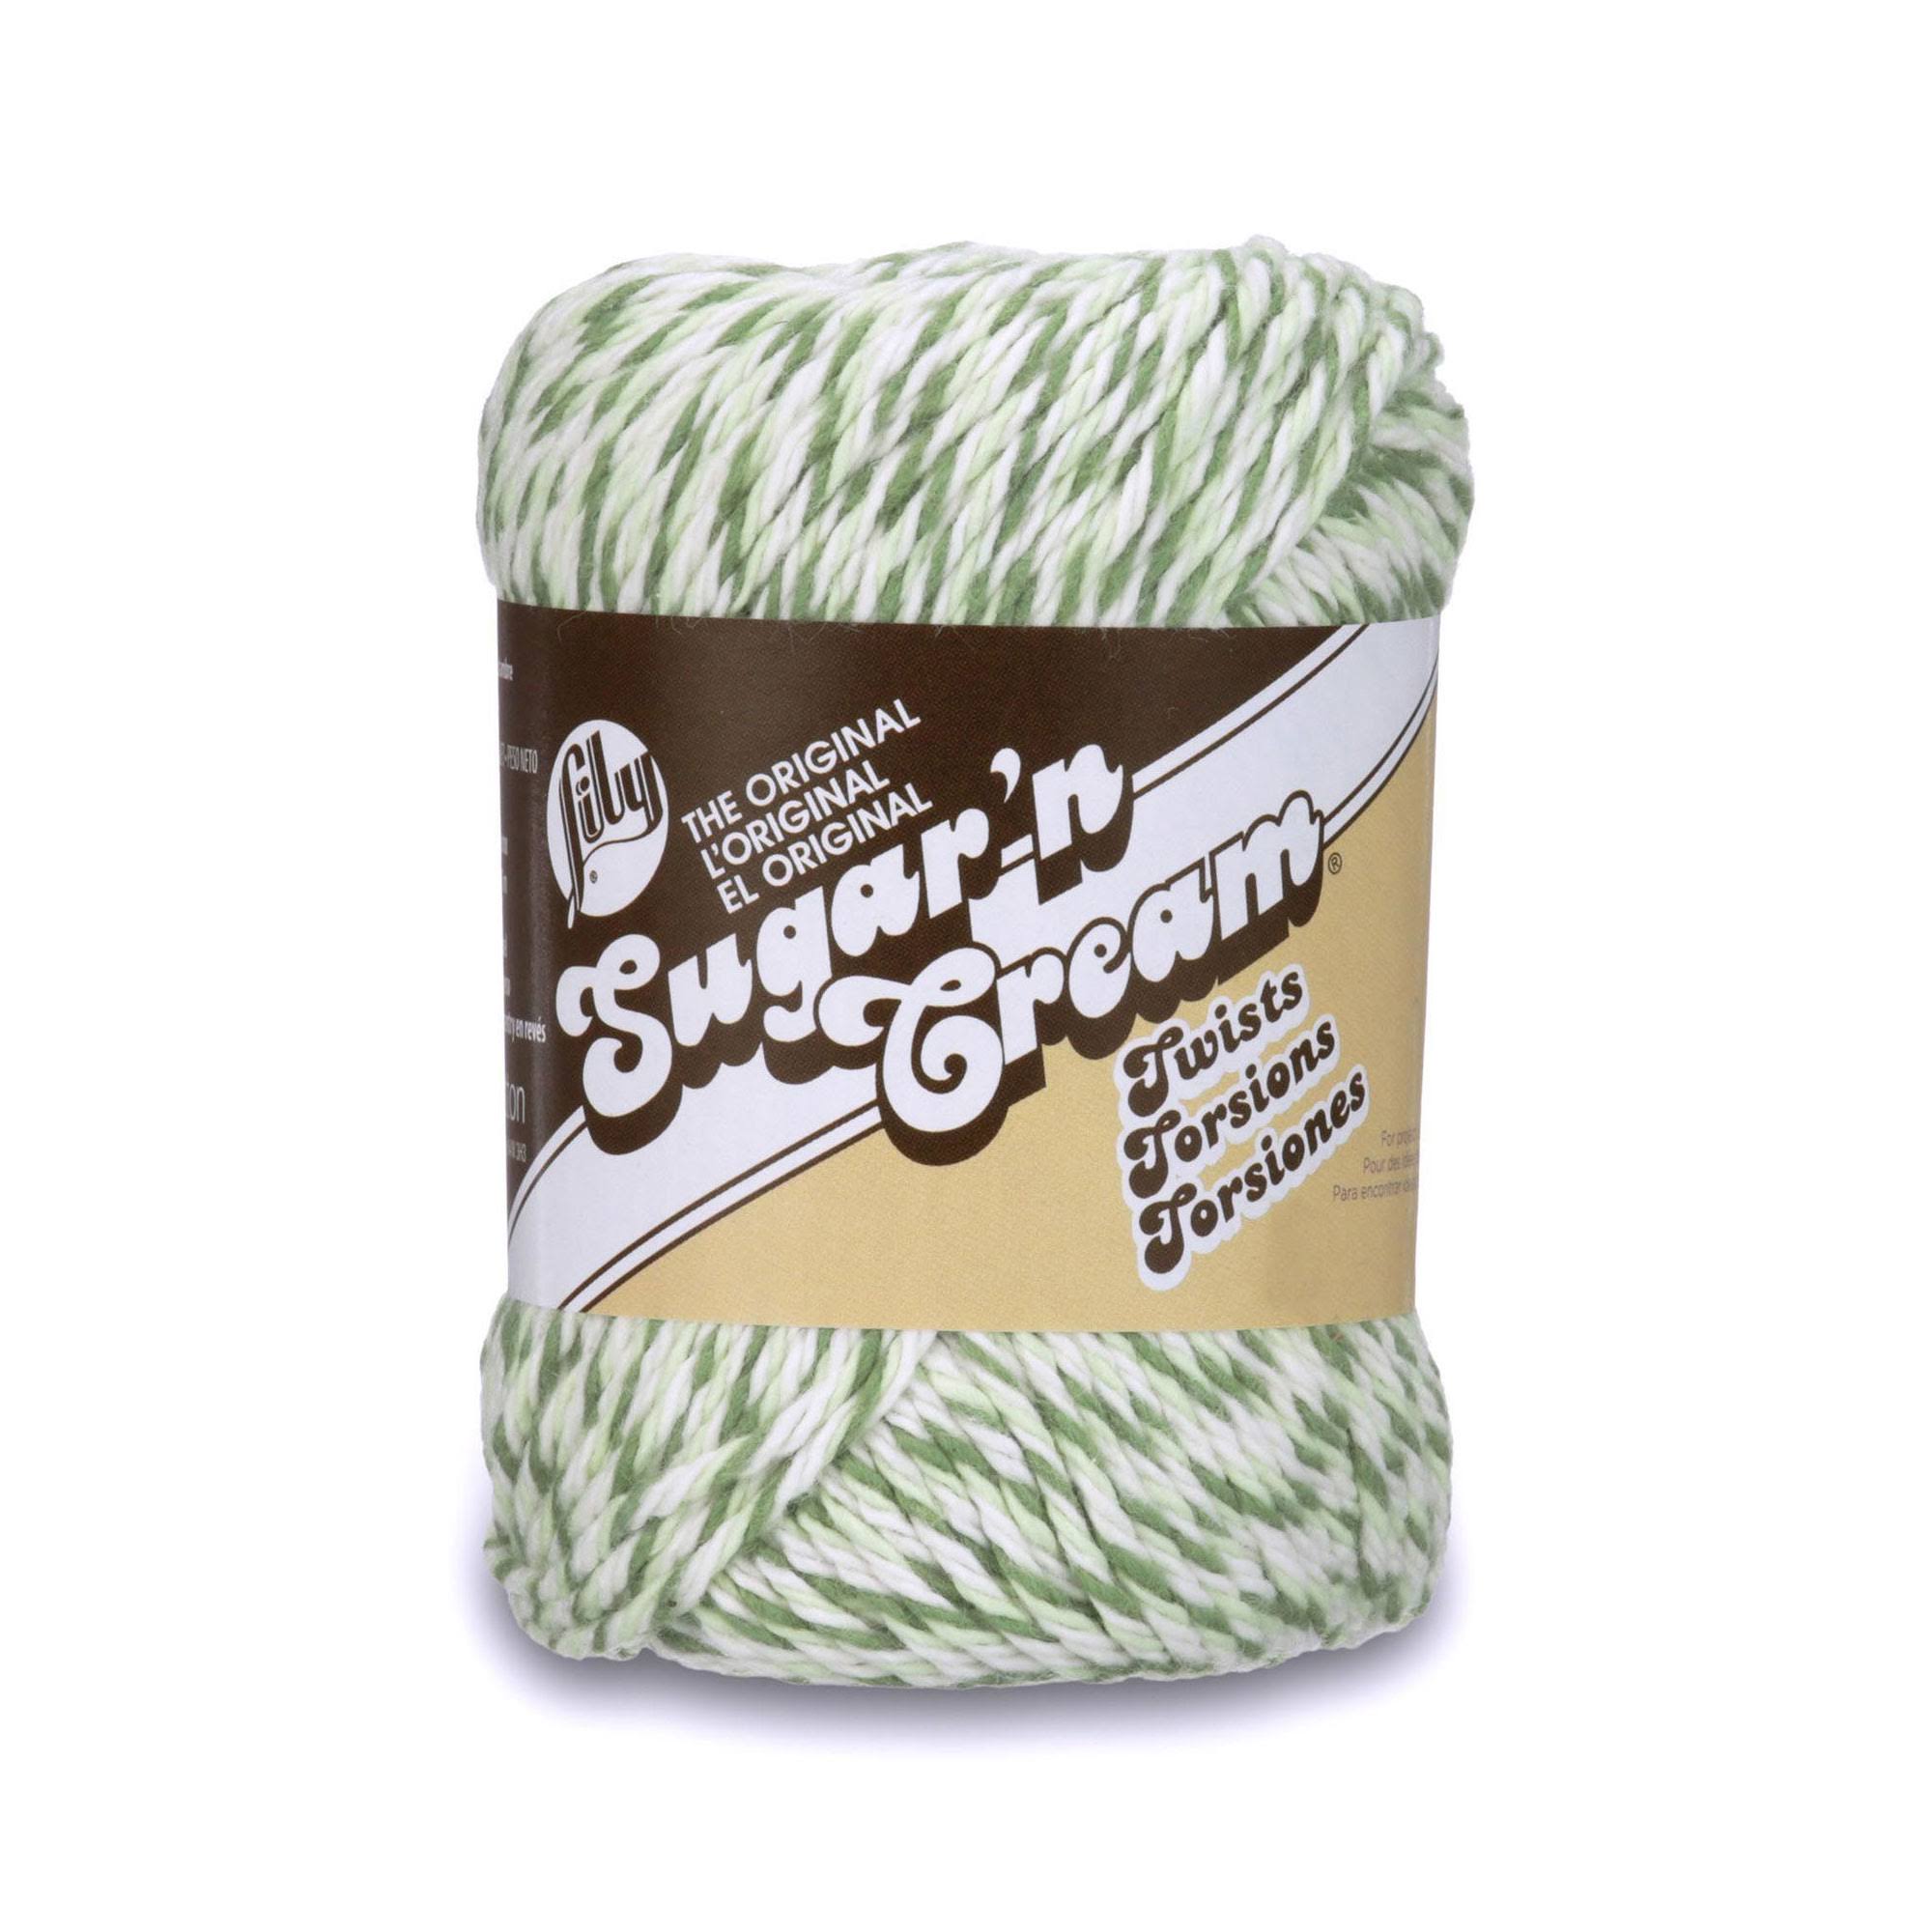 Lily Sugar 'N Cream Twists Yarn - 2oz, Green Twists